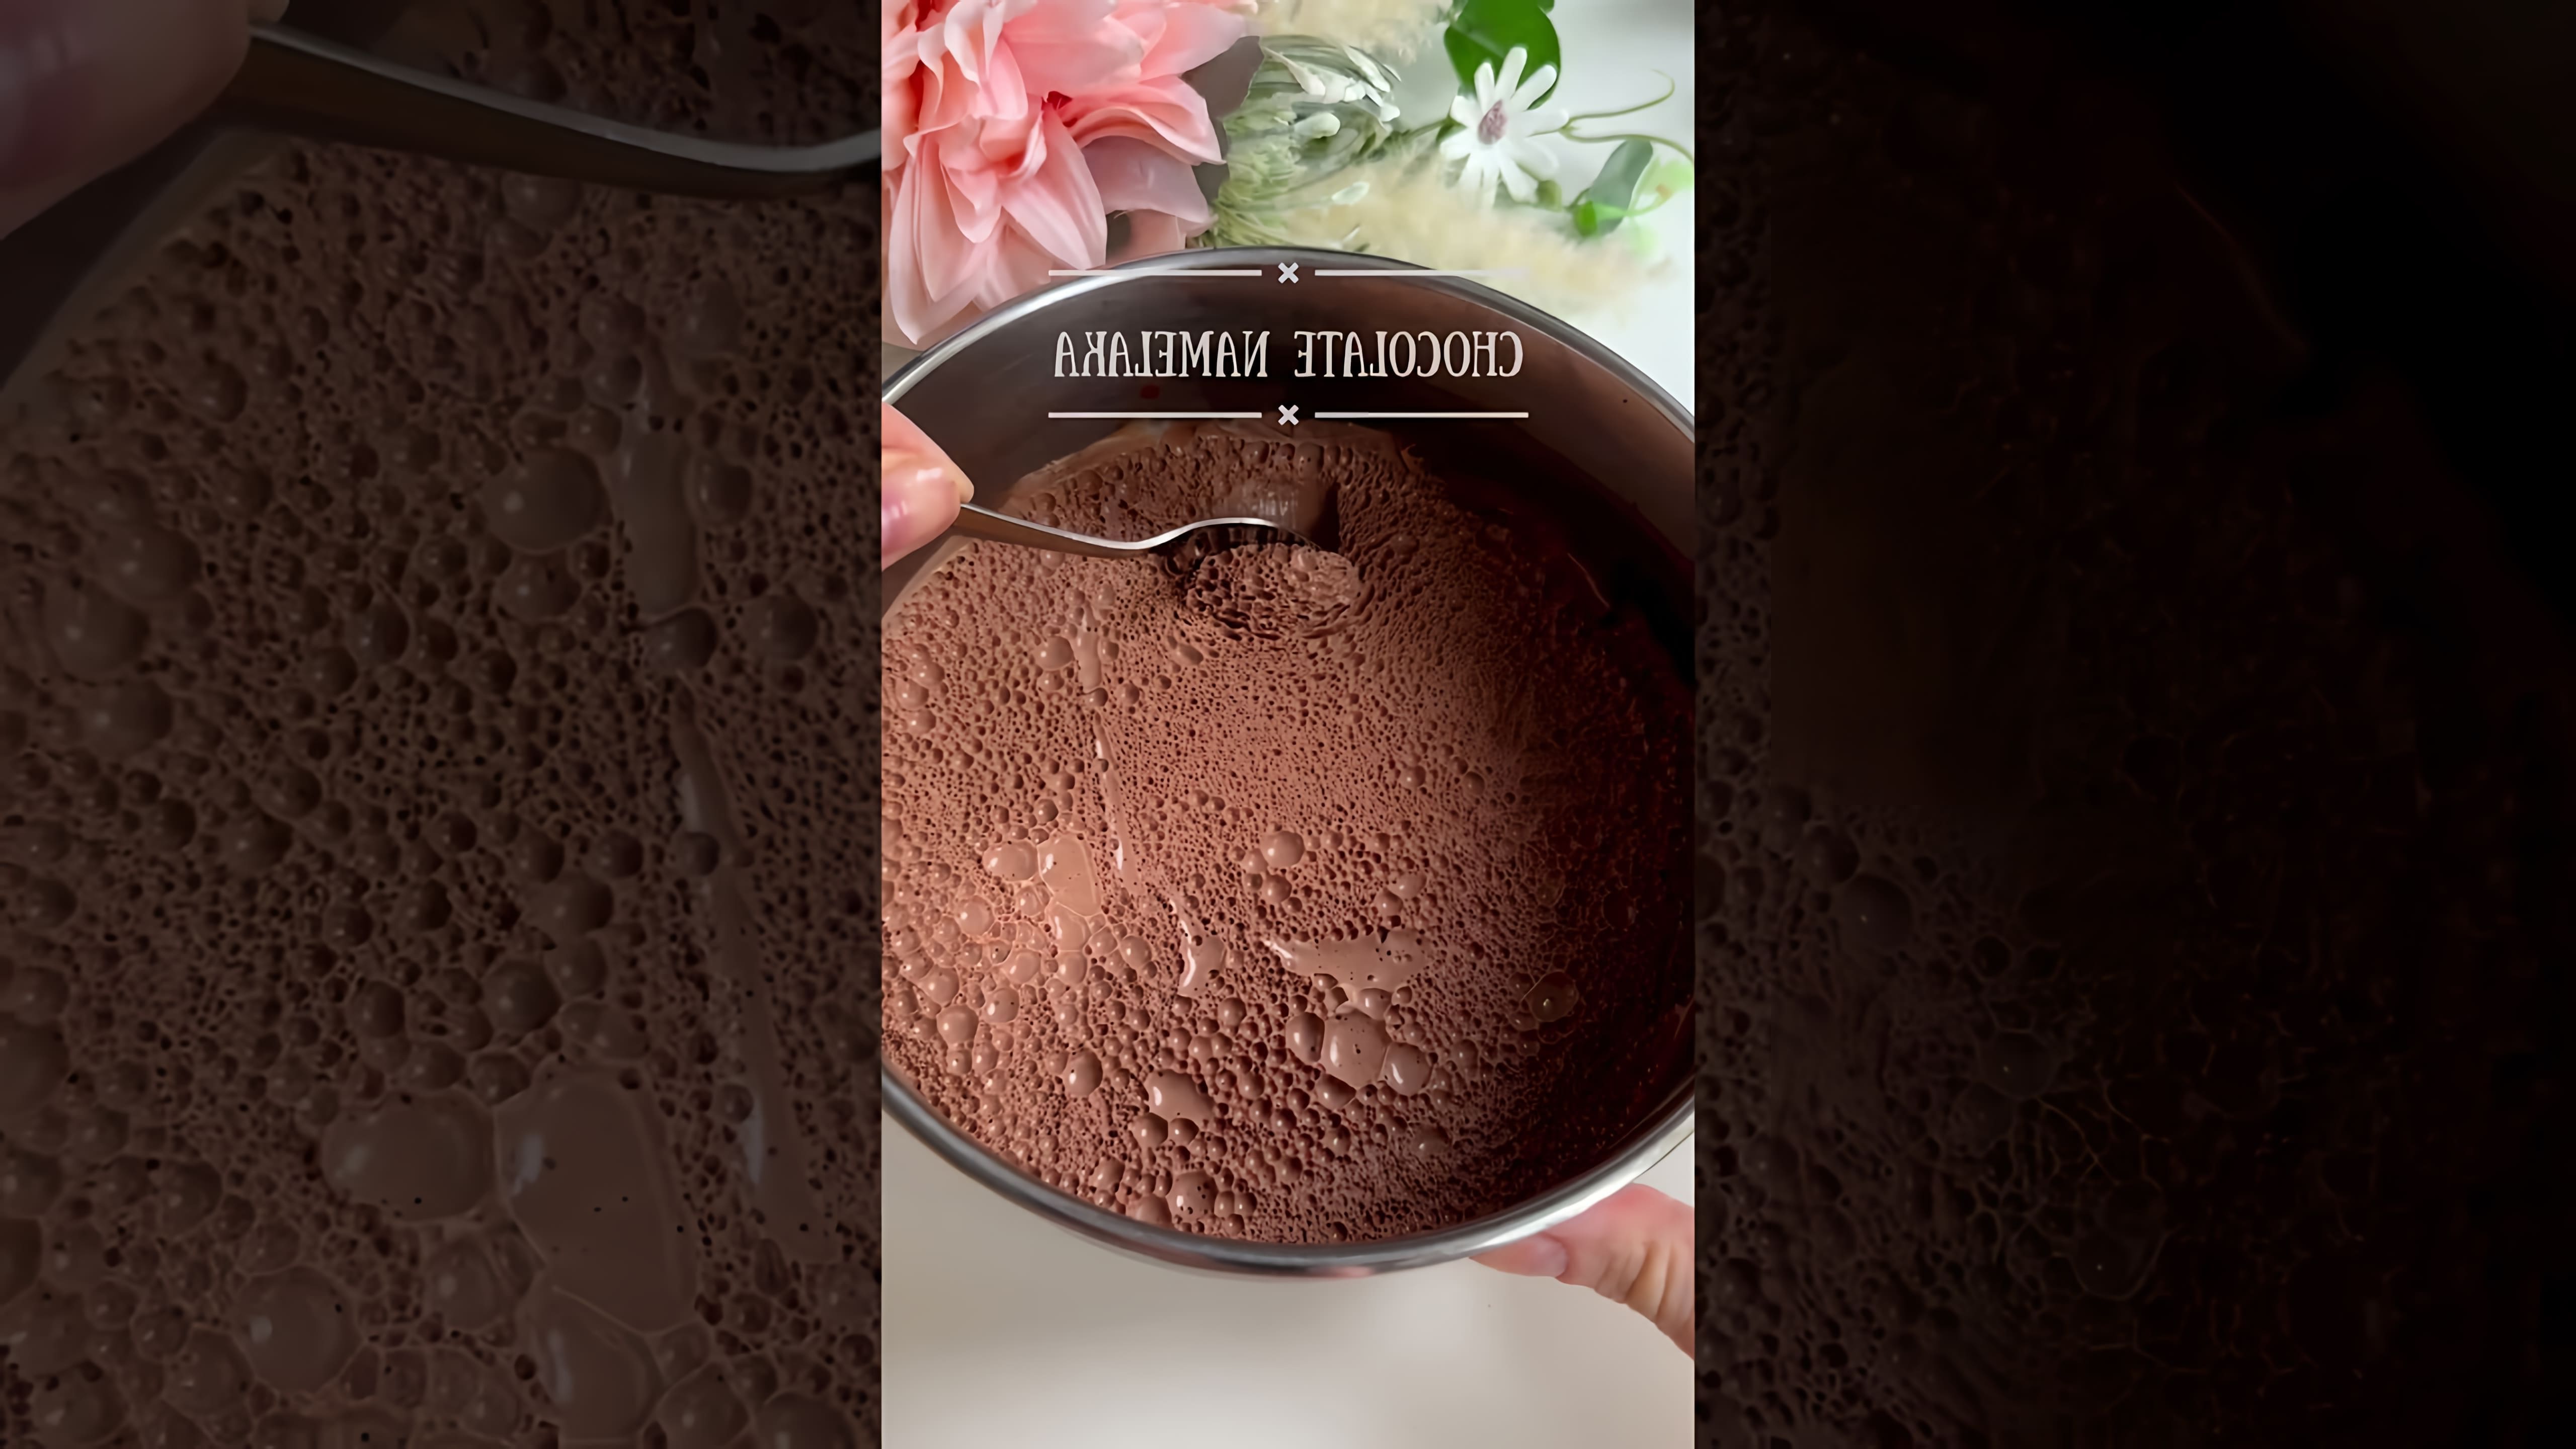 Шоколадный крем #shorts - это короткий видеоролик, который демонстрирует процесс приготовления шоколадного крема